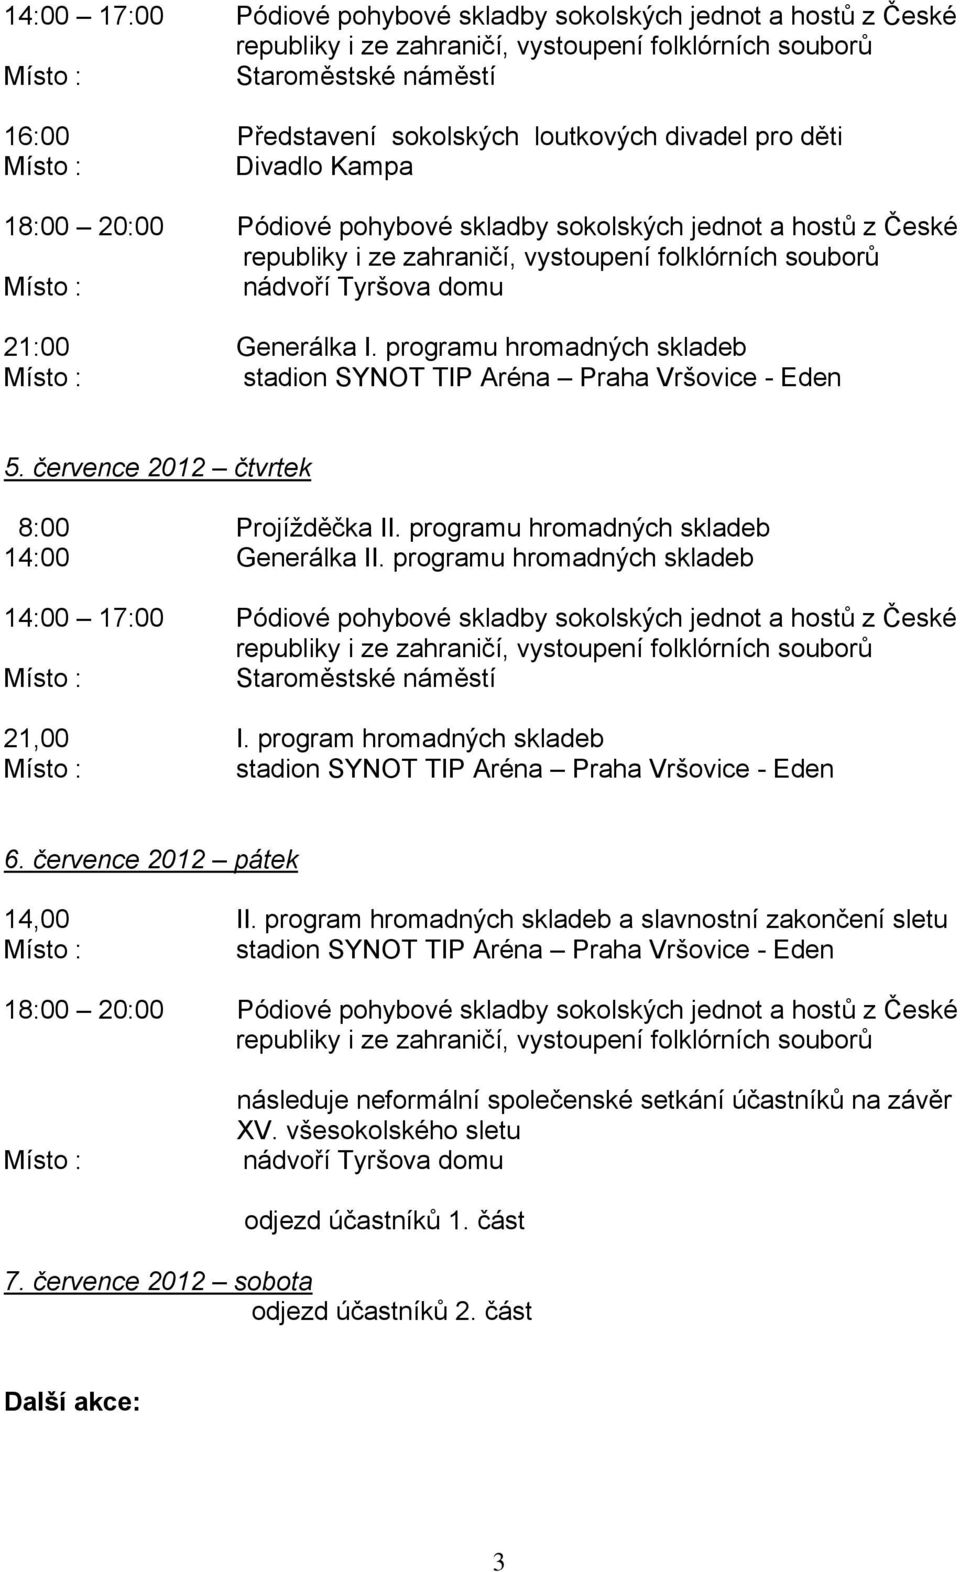 programu hromadných skladeb Staroměstské náměstí 21,00 I. program hromadných skladeb 6. července 2012 pátek 14,00 II.